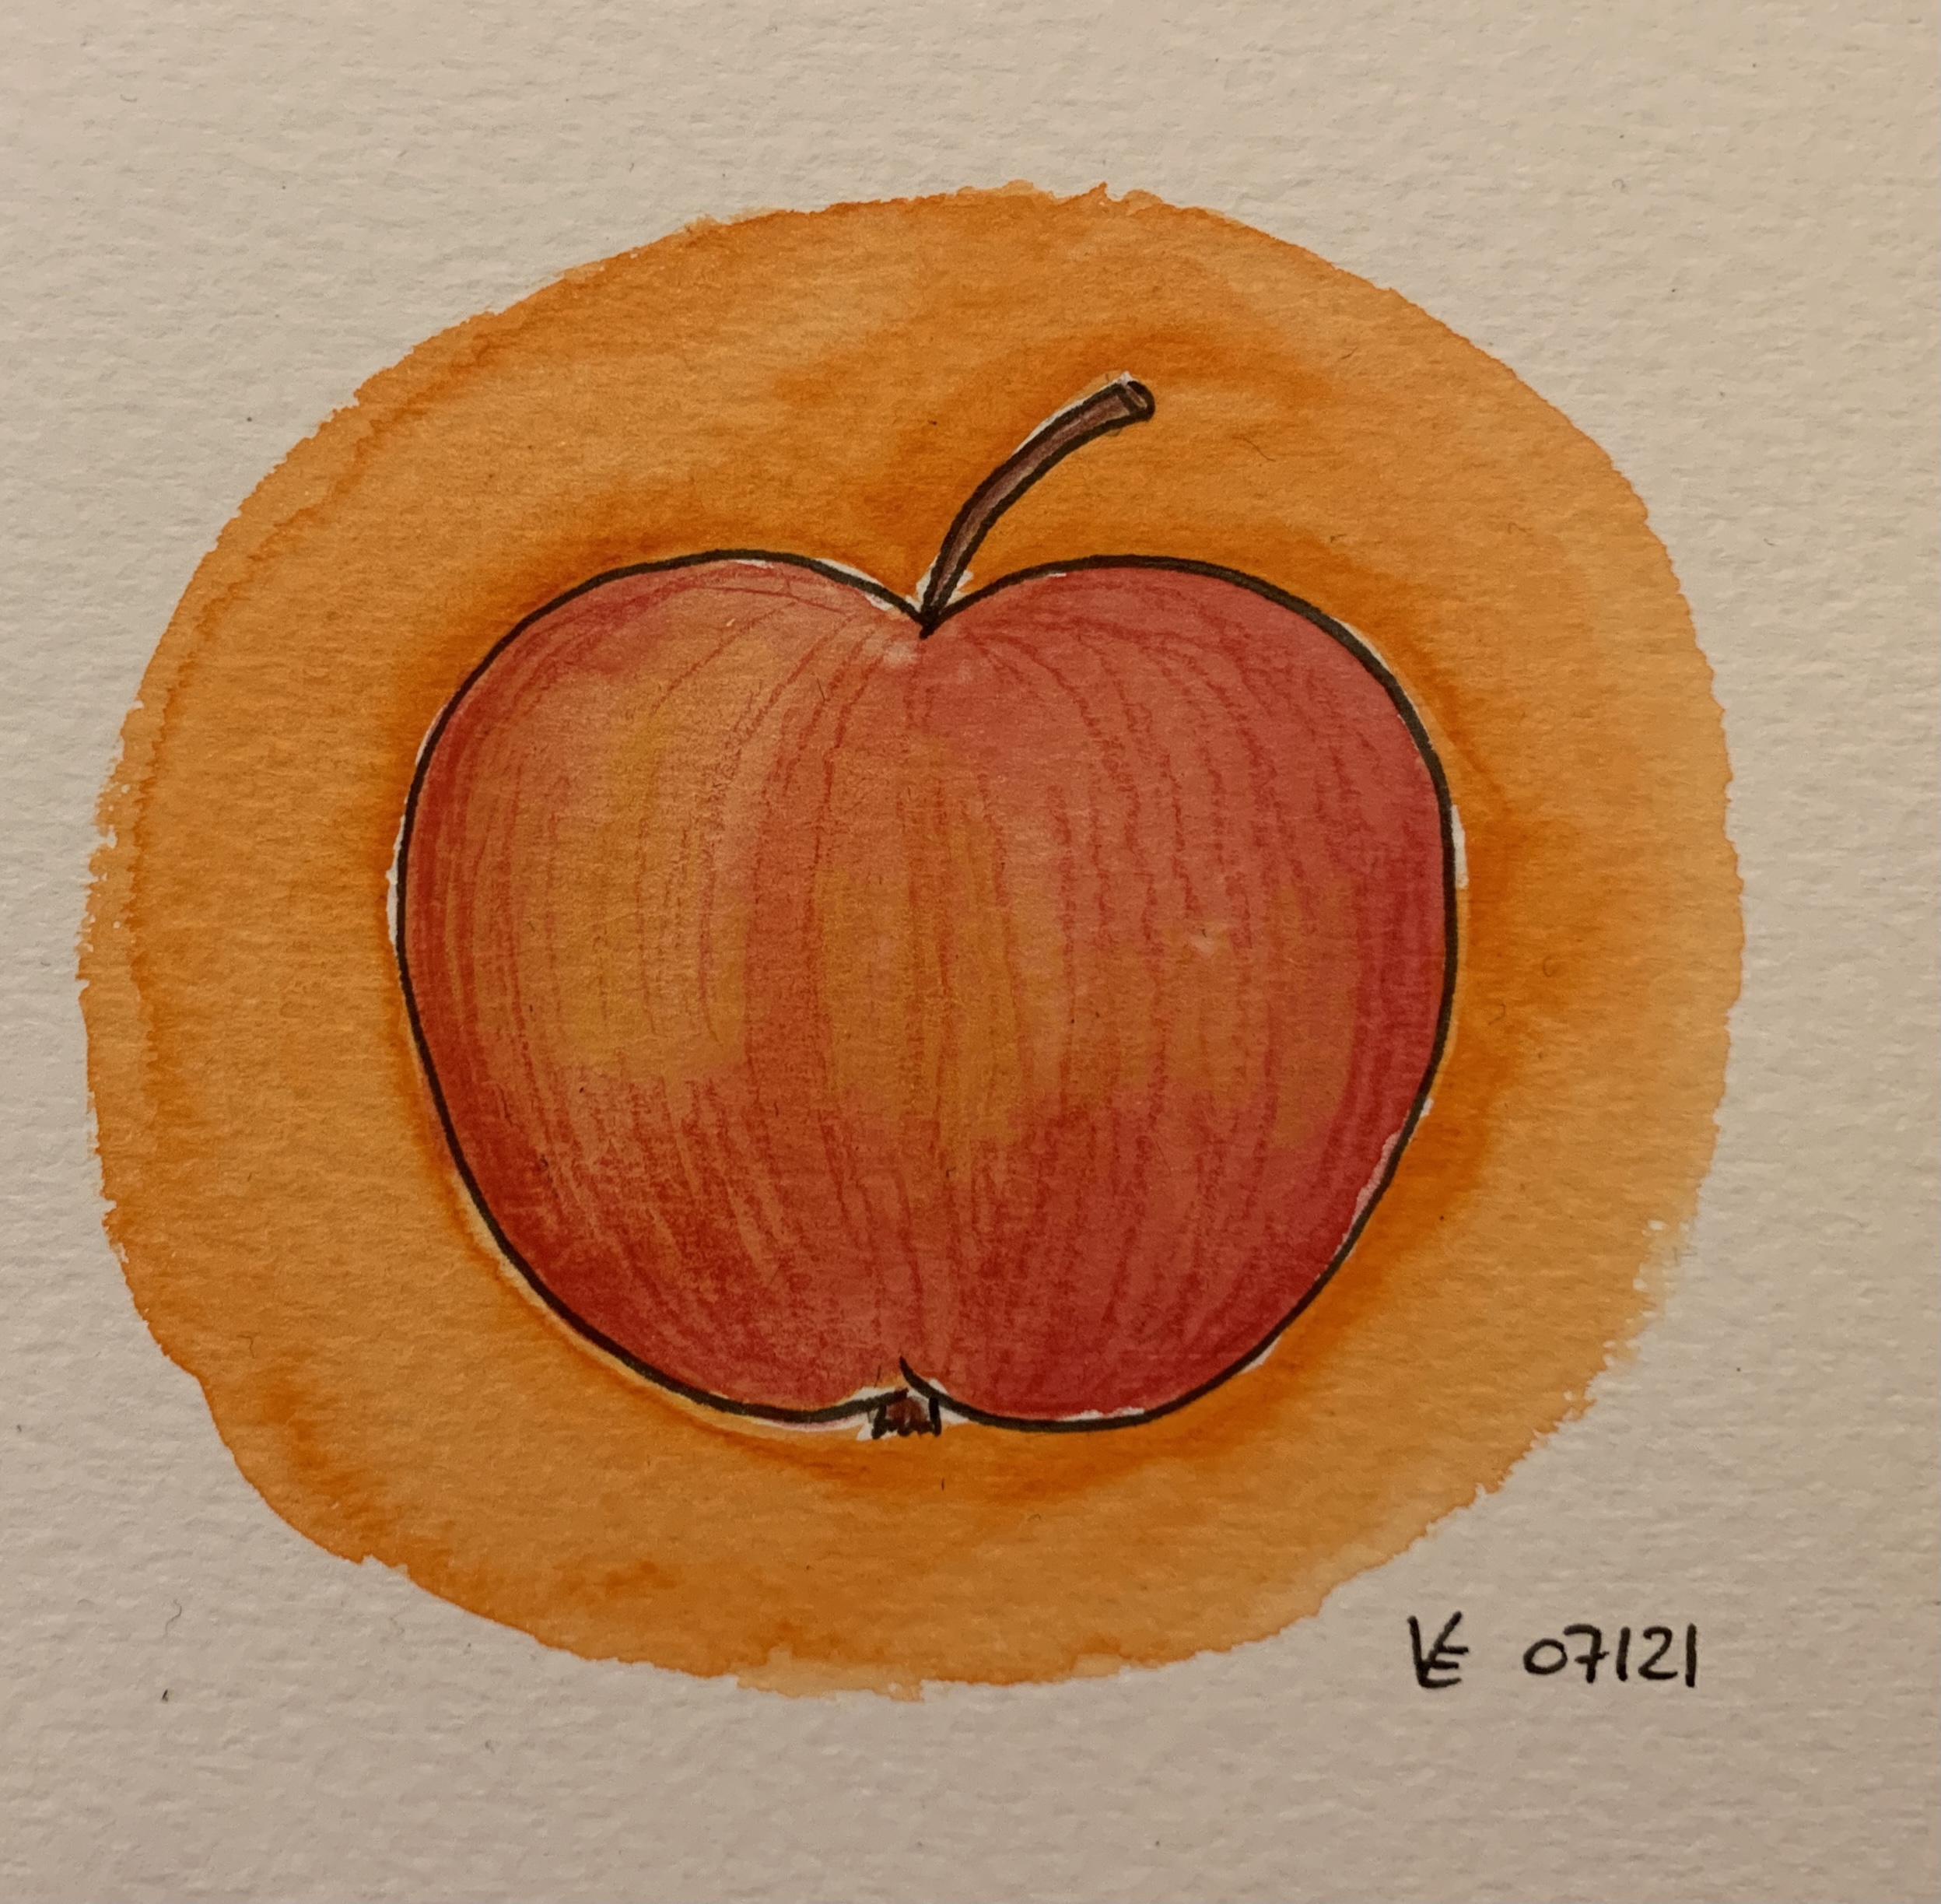 „An Apple a Day Keeps the Doctor Away“, oder was es sonst noch über den Apfel zu wissen gibt.